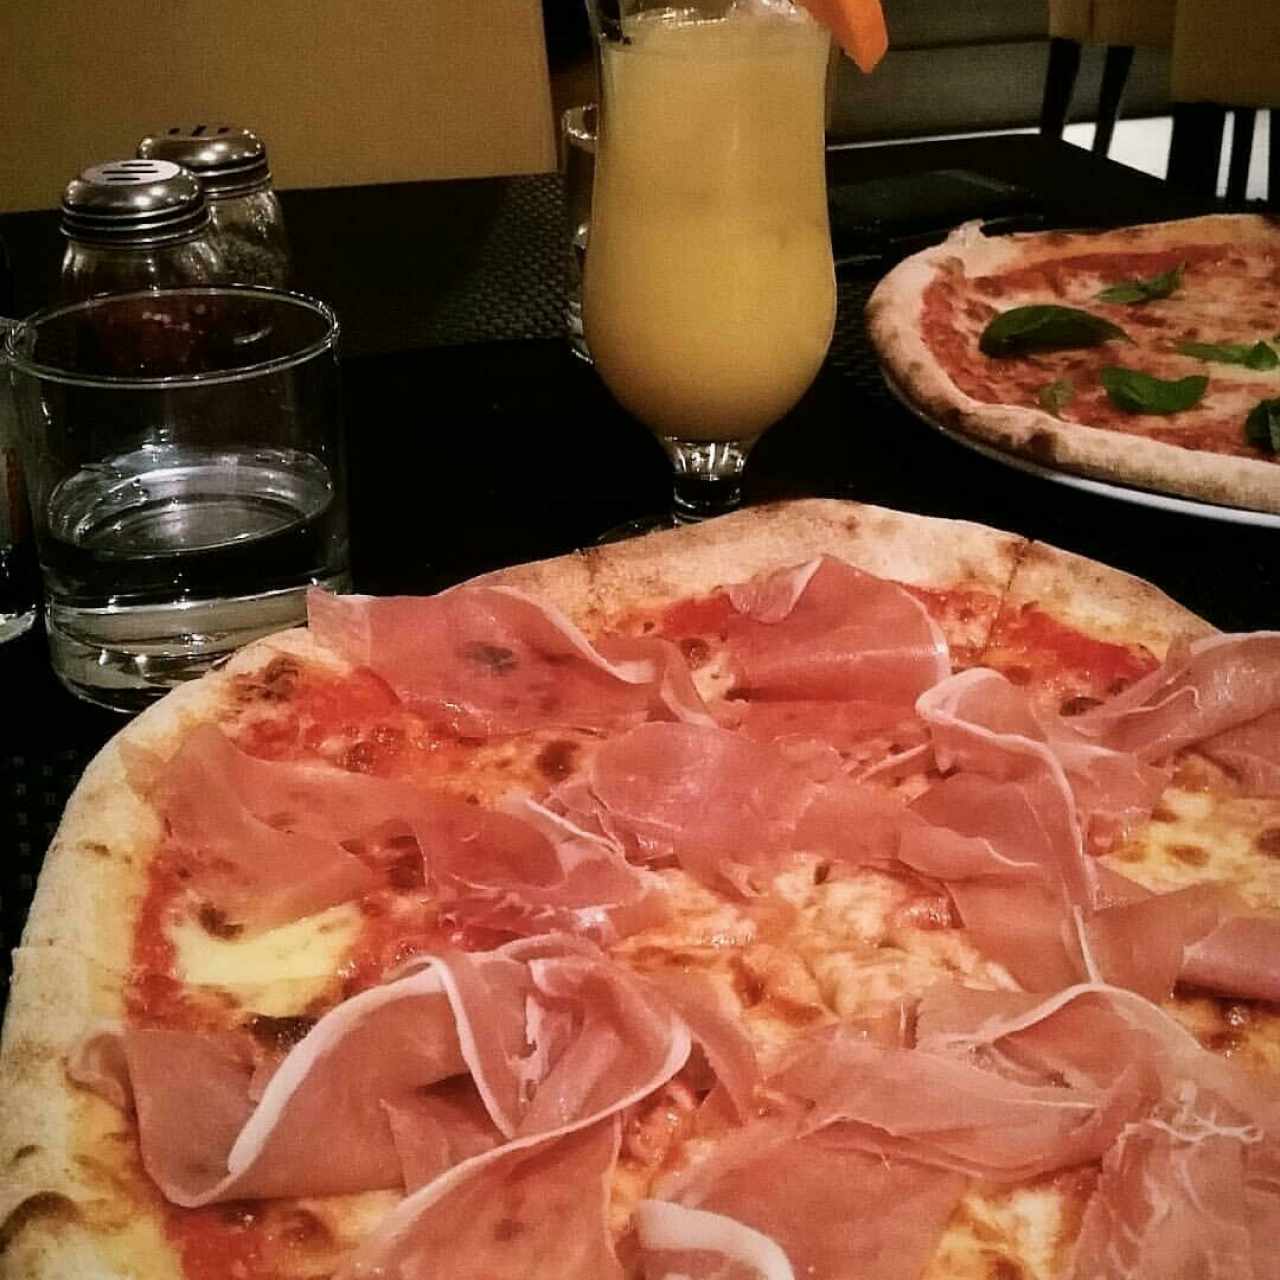 pizza España y pizza Margarita